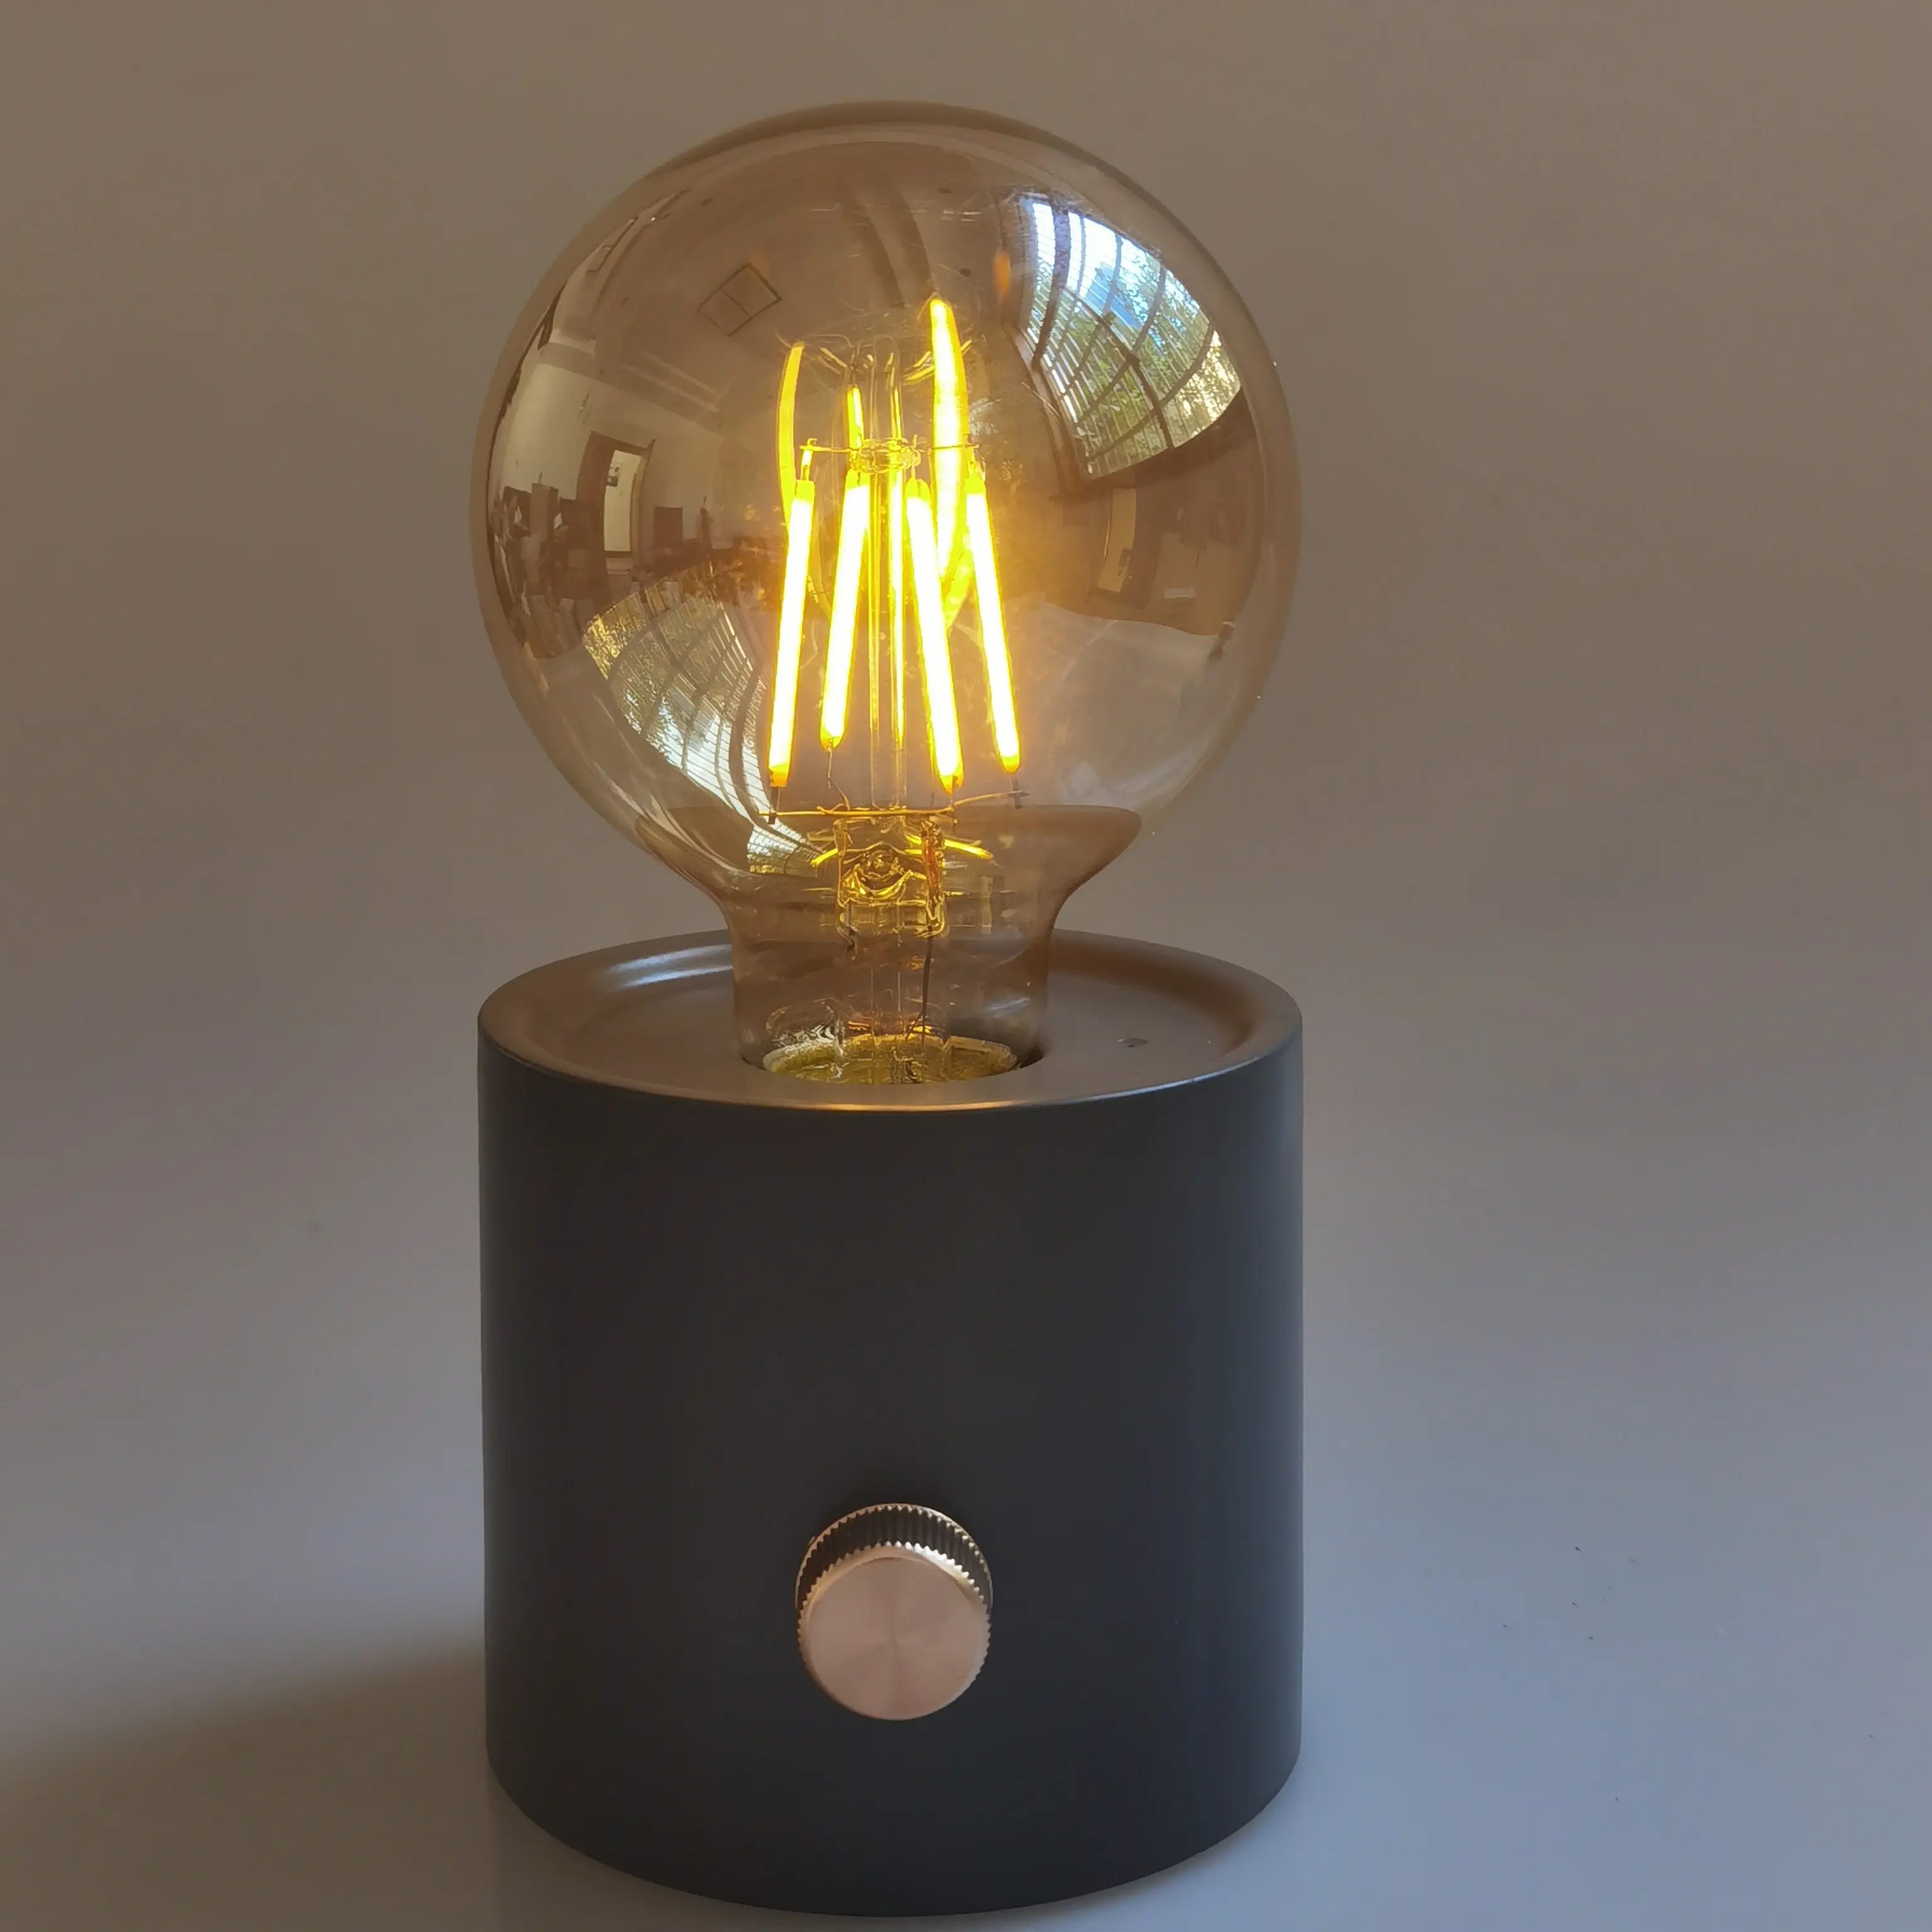 新しいマルチデザイン装飾調光可能レトロバッテリーランプ、ランプベース付きLEDフィラメント電球